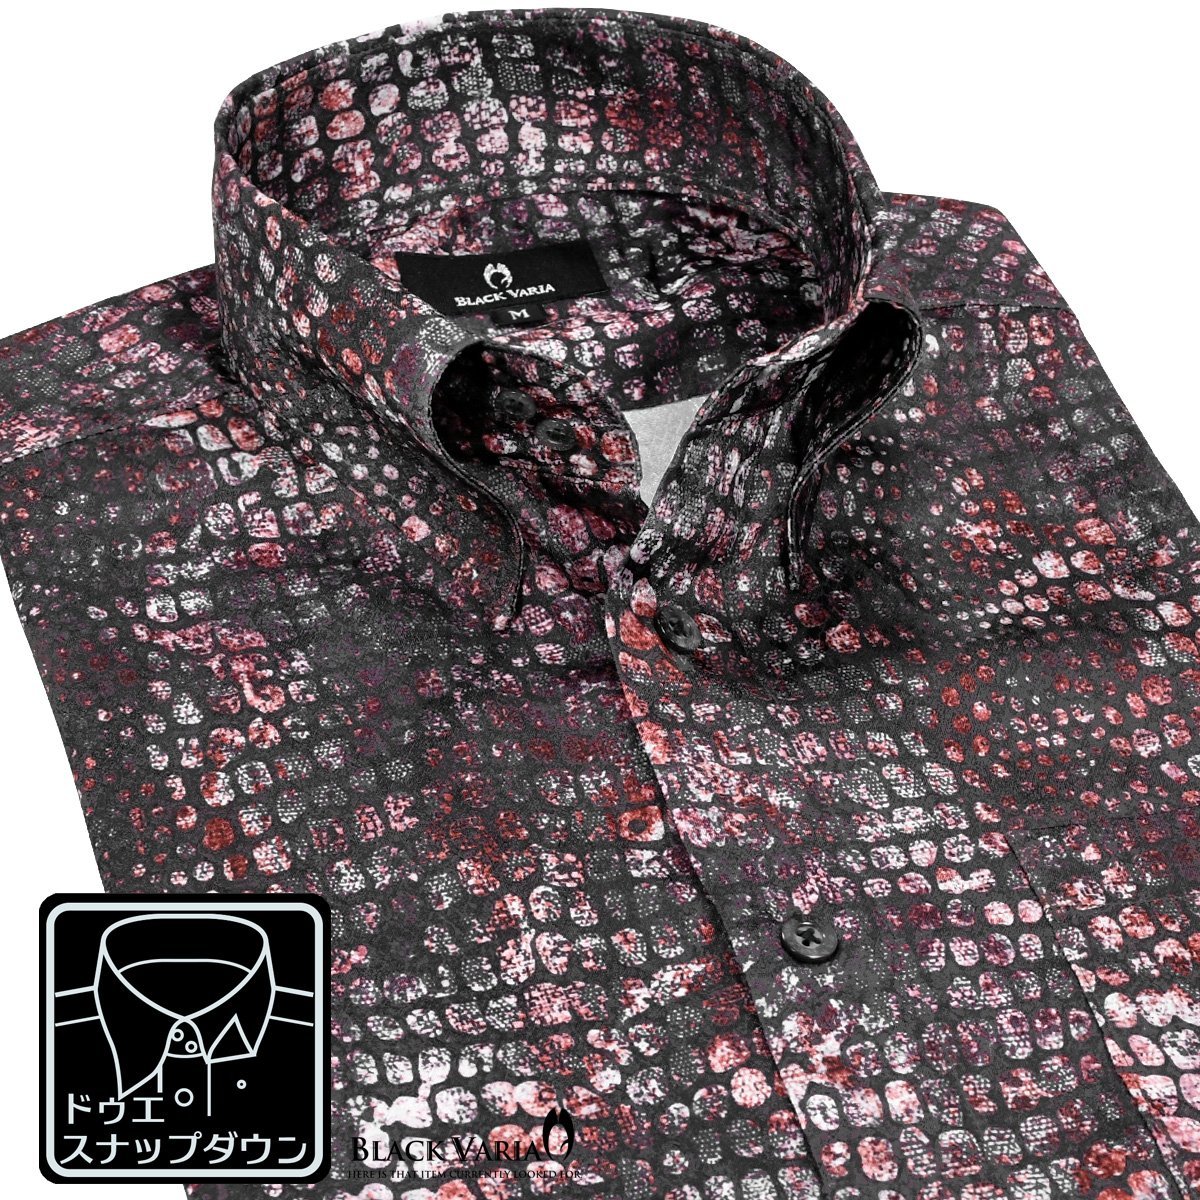 211200-win BlackVaria ドゥエボットーニ 蛇柄 サテンドレスシャツ 衿先スナップボタン パイソンジャガード メンズ(レッド赤ワイン) Mのサムネイル